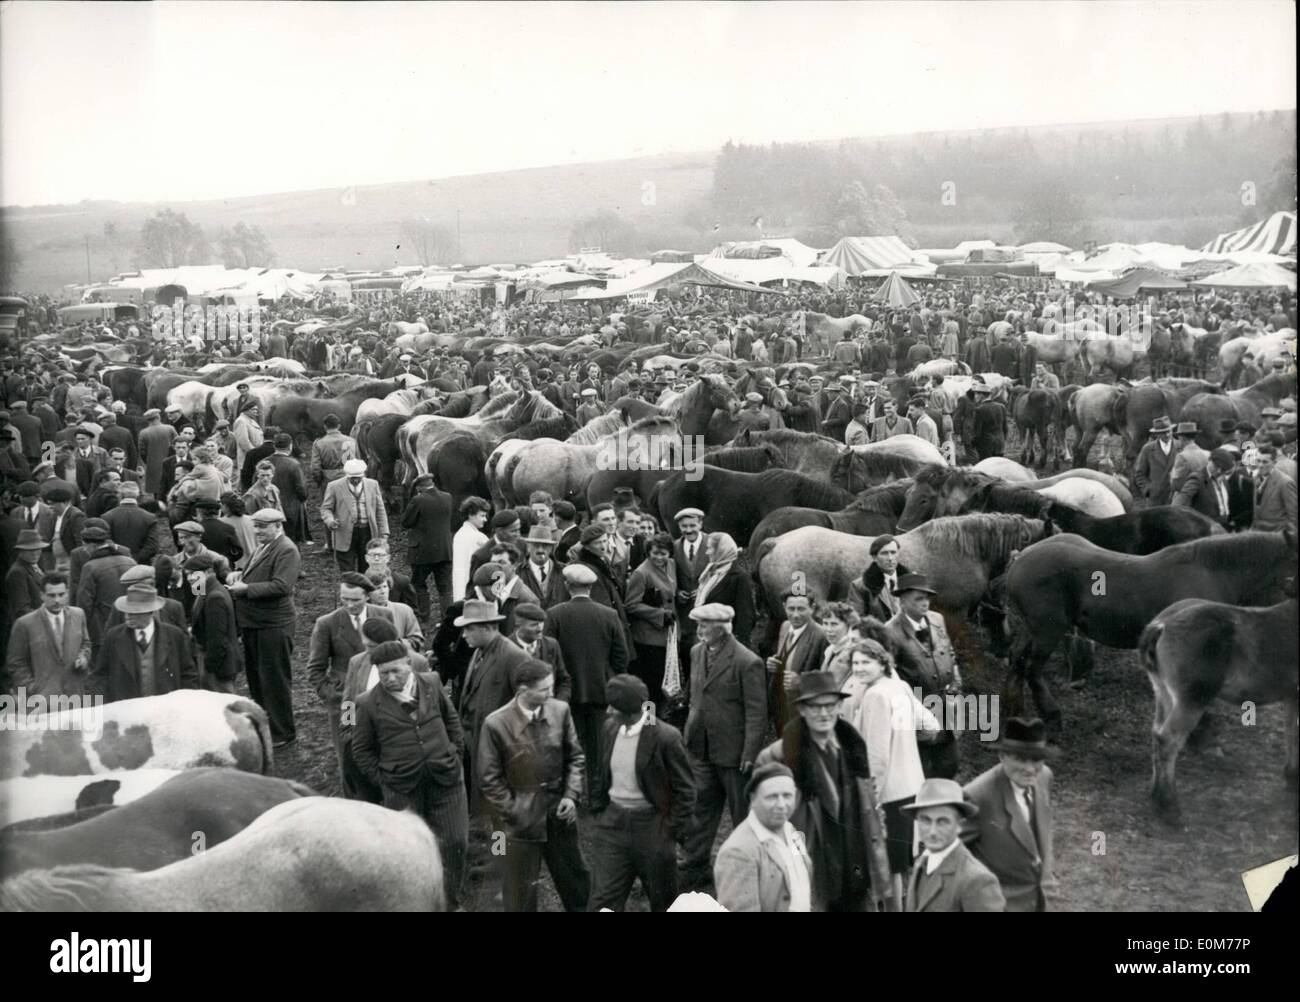 11. November 1953 - das größte Pferd Messe In Frankreich, Poussay, gibt es drei hundert Jahre!: eine allgemeine Übersicht über die größten Pferdemesse in Frankreich Poussay (Lorrain), 300 Jahre und hat einen guten Ruf. Stockfoto